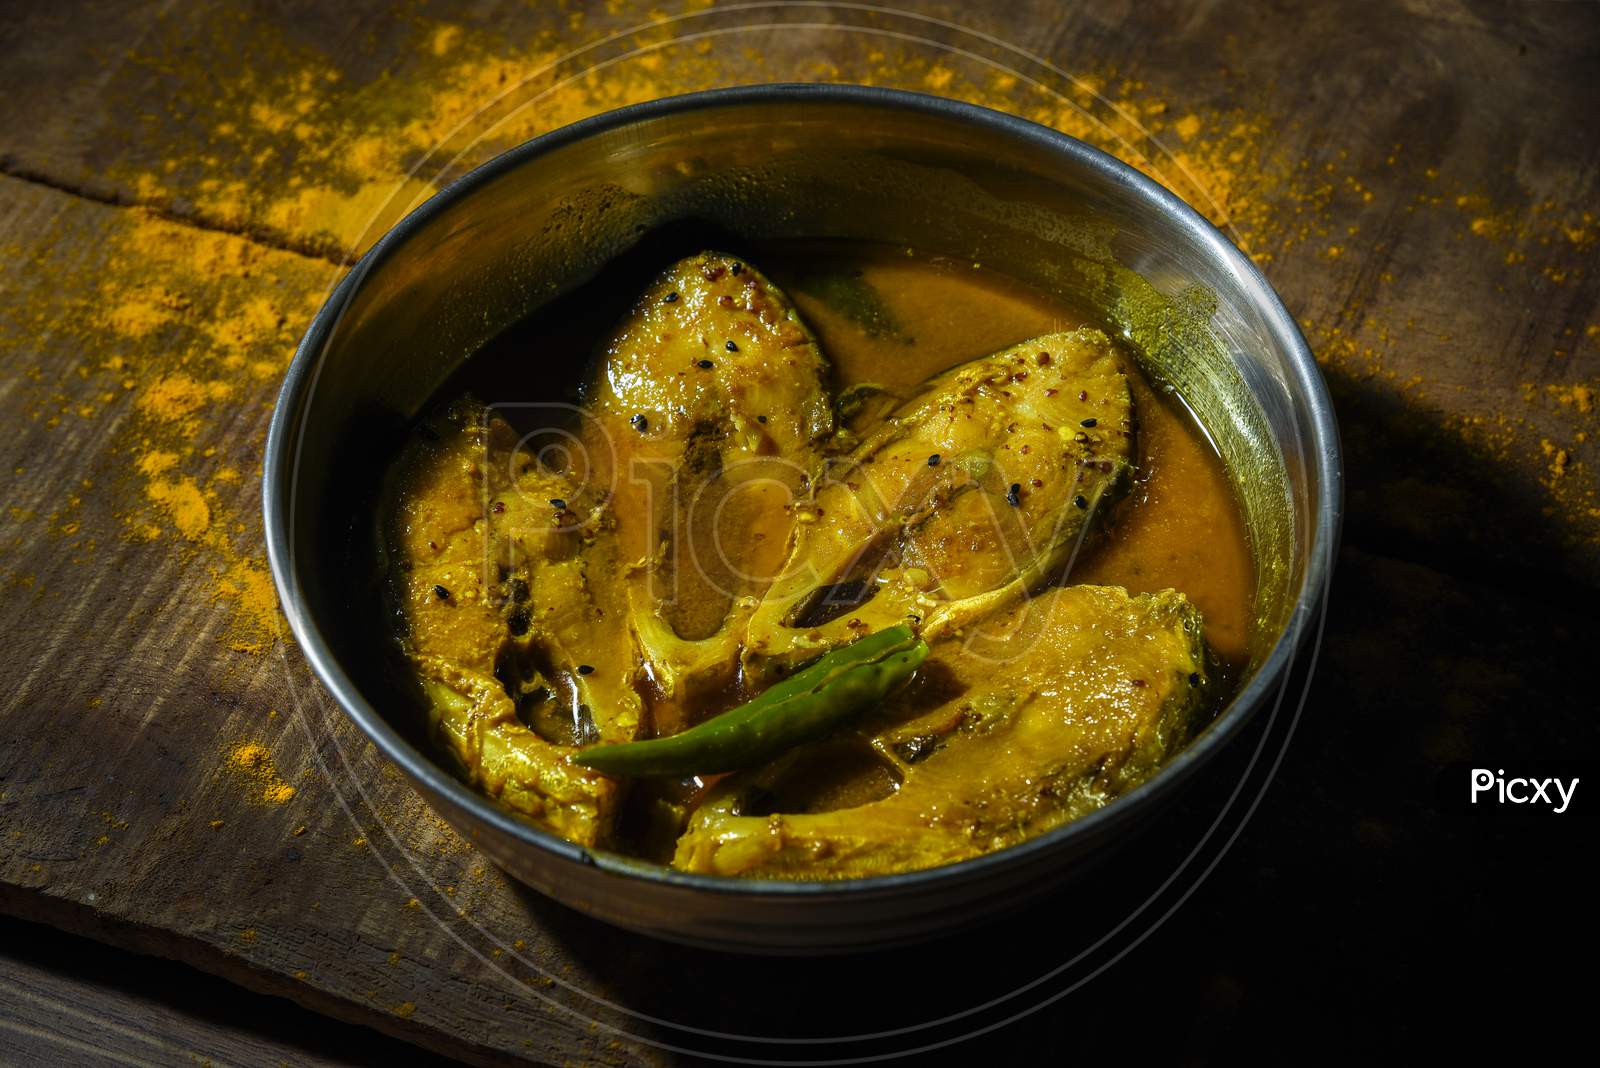 Ilish/ Hilsha cooked in mustard sauce. Bengali Ilish sorshe.